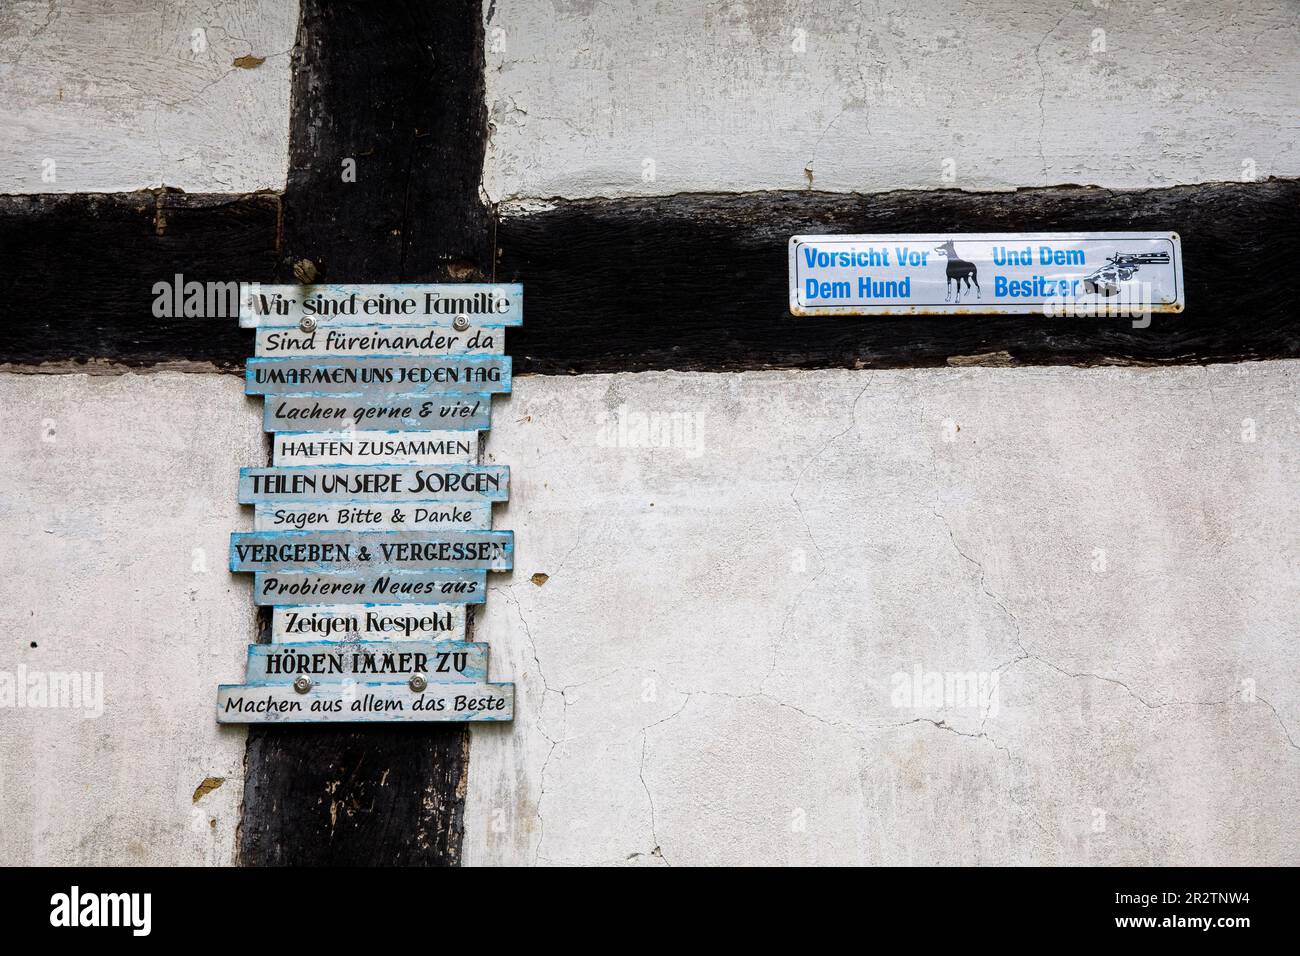 Cartelli con slogan guida su una casa a graticcio nel centro storico di Fischerhude, bassa Sassonia, Germania. Schilder mit Leitspruechen an ei Foto Stock